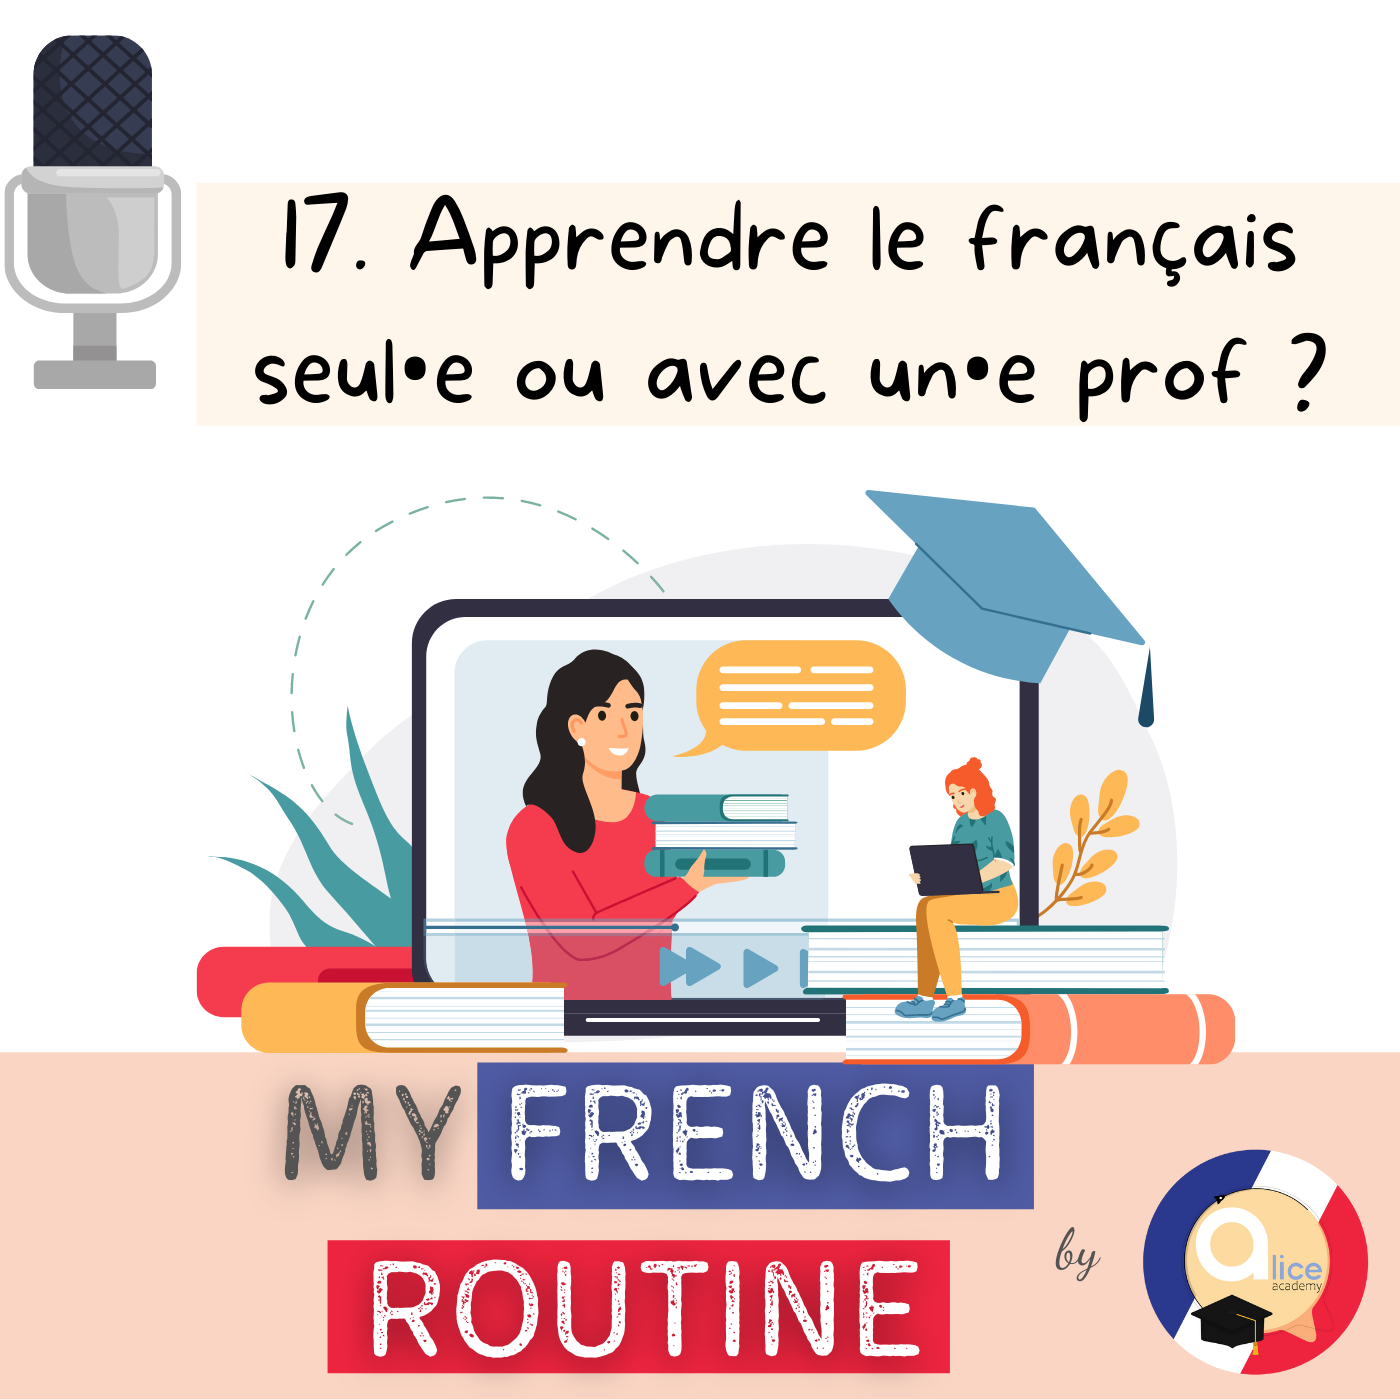 #17. Apprendre le français seul•e ou avec un•e prof ? - My French Routine